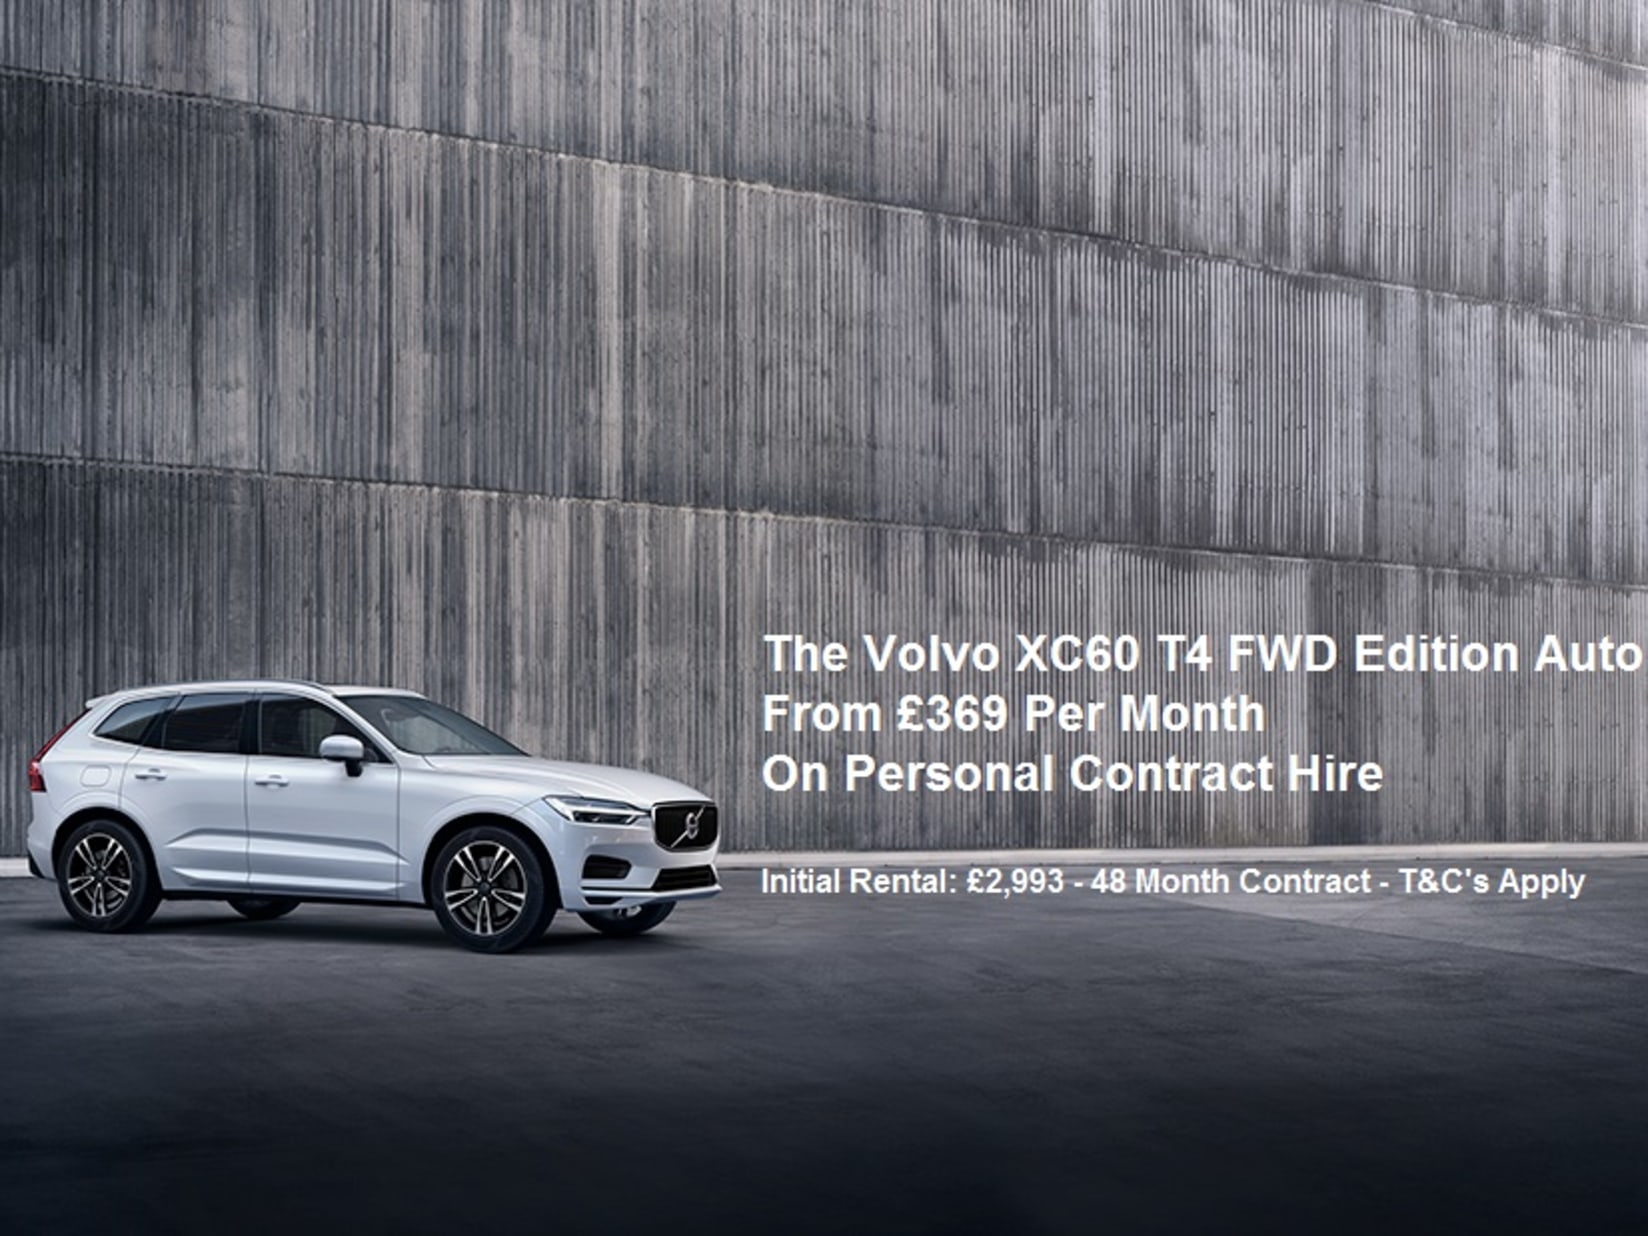 Volvo xc60 t4